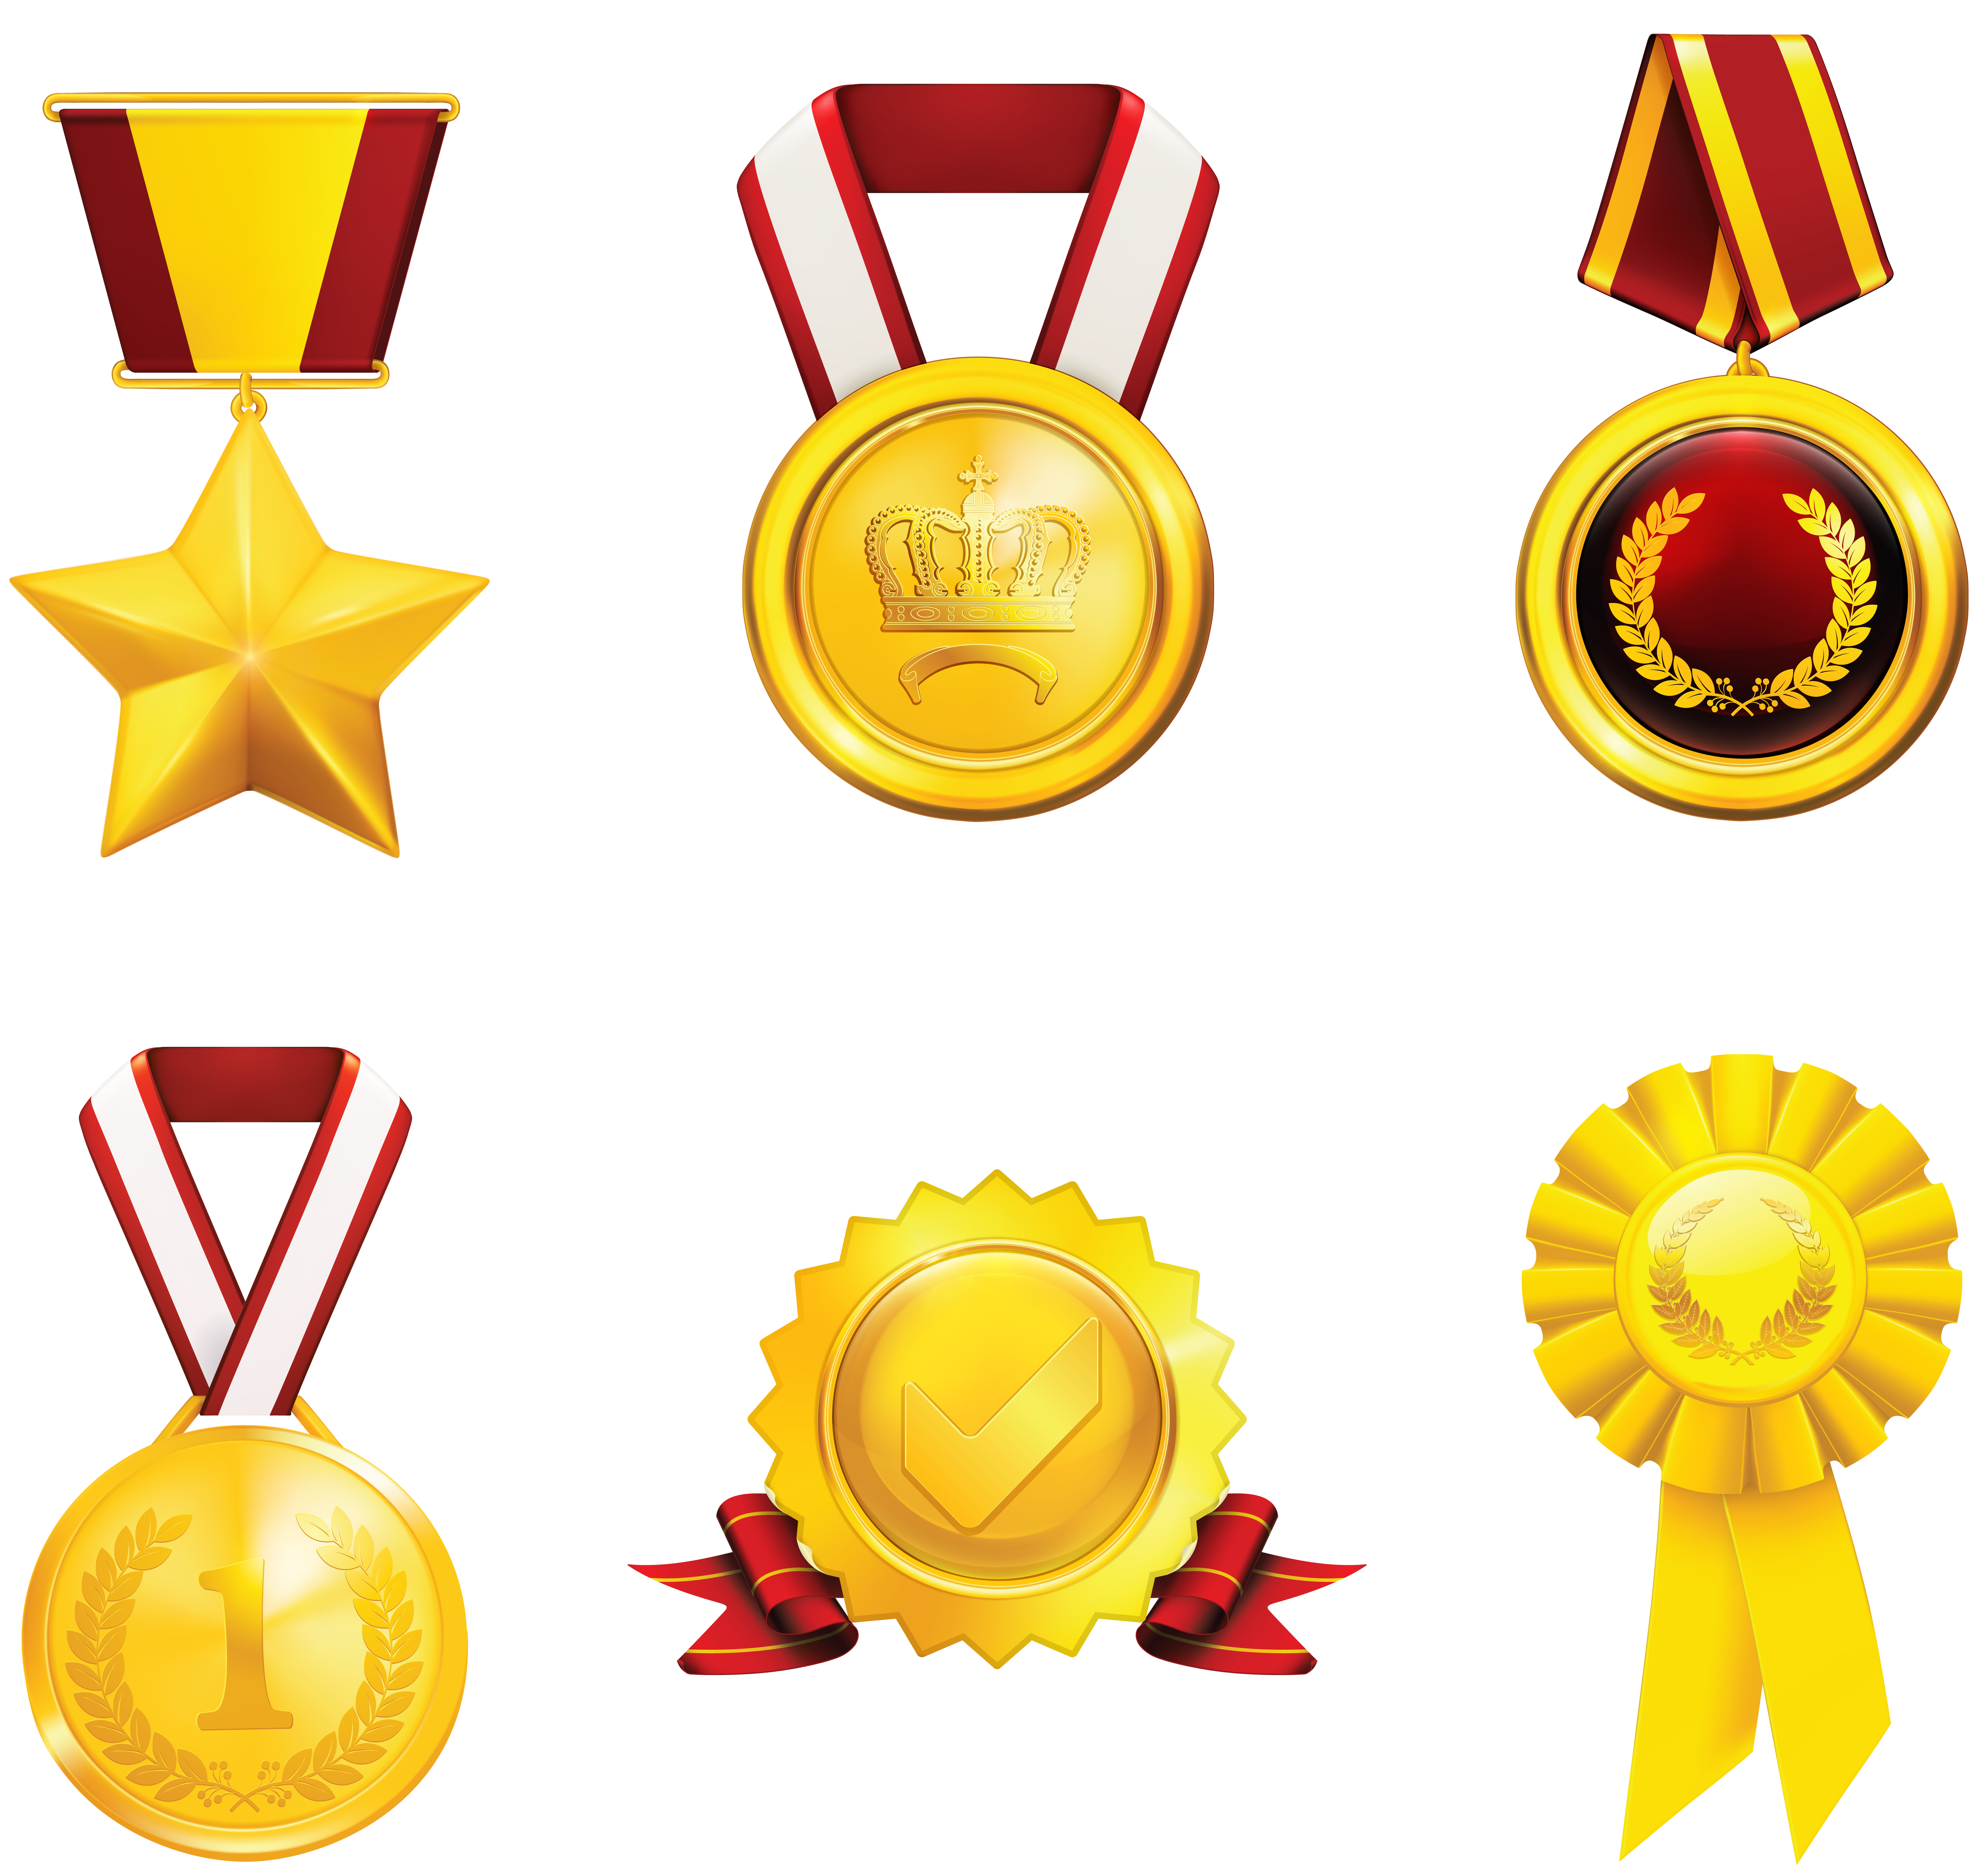 Ödüller, madalyalar